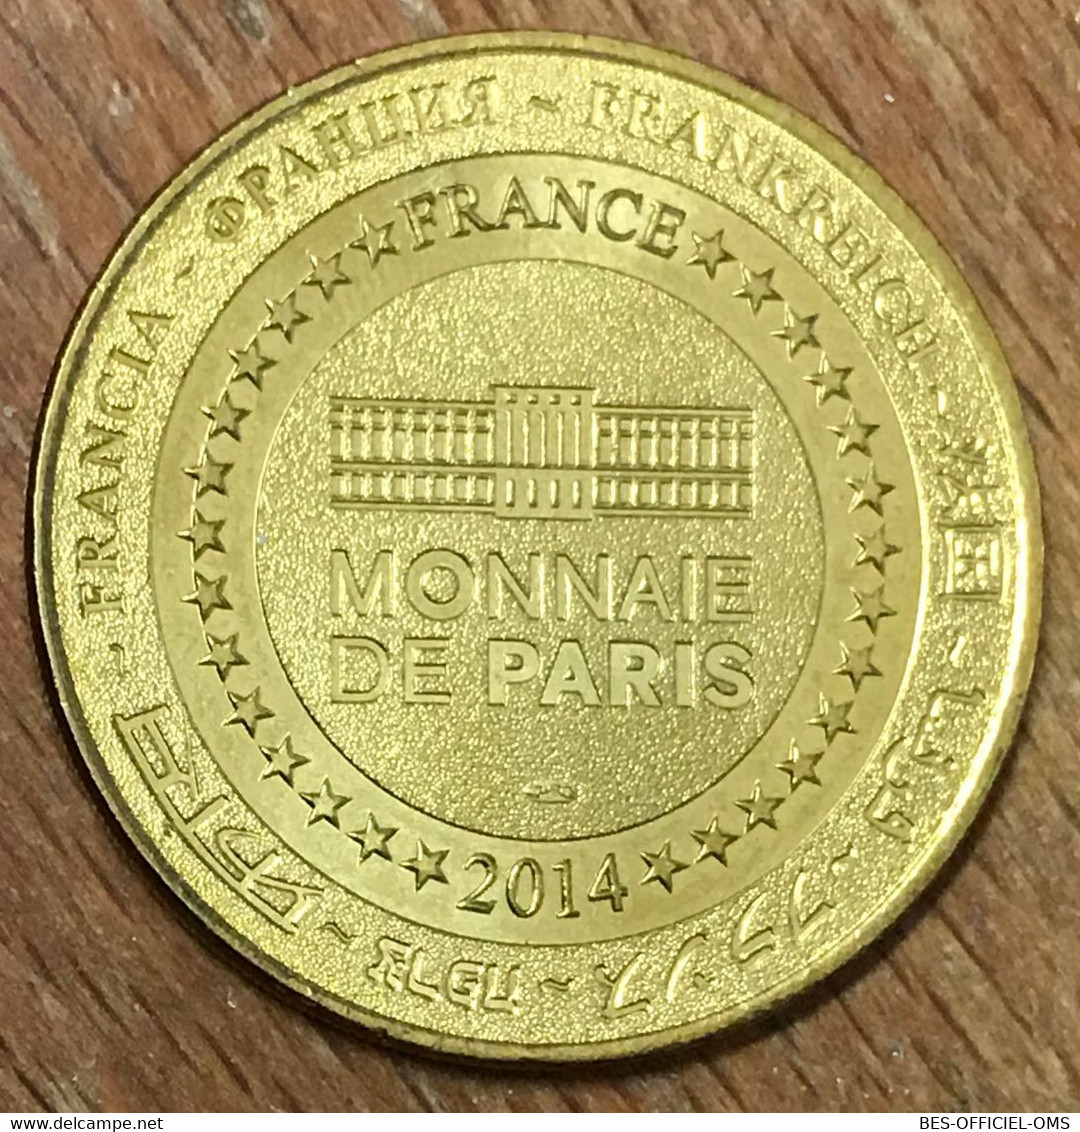 62 BOULOGNE SUR MER TORTUE CAOUANNE NAUSICAÀ MDP 2014 MEDAILLE MONNAIE DE PARIS JETON TOURISTIQUE MEDALS COINS TOKENS - 2014